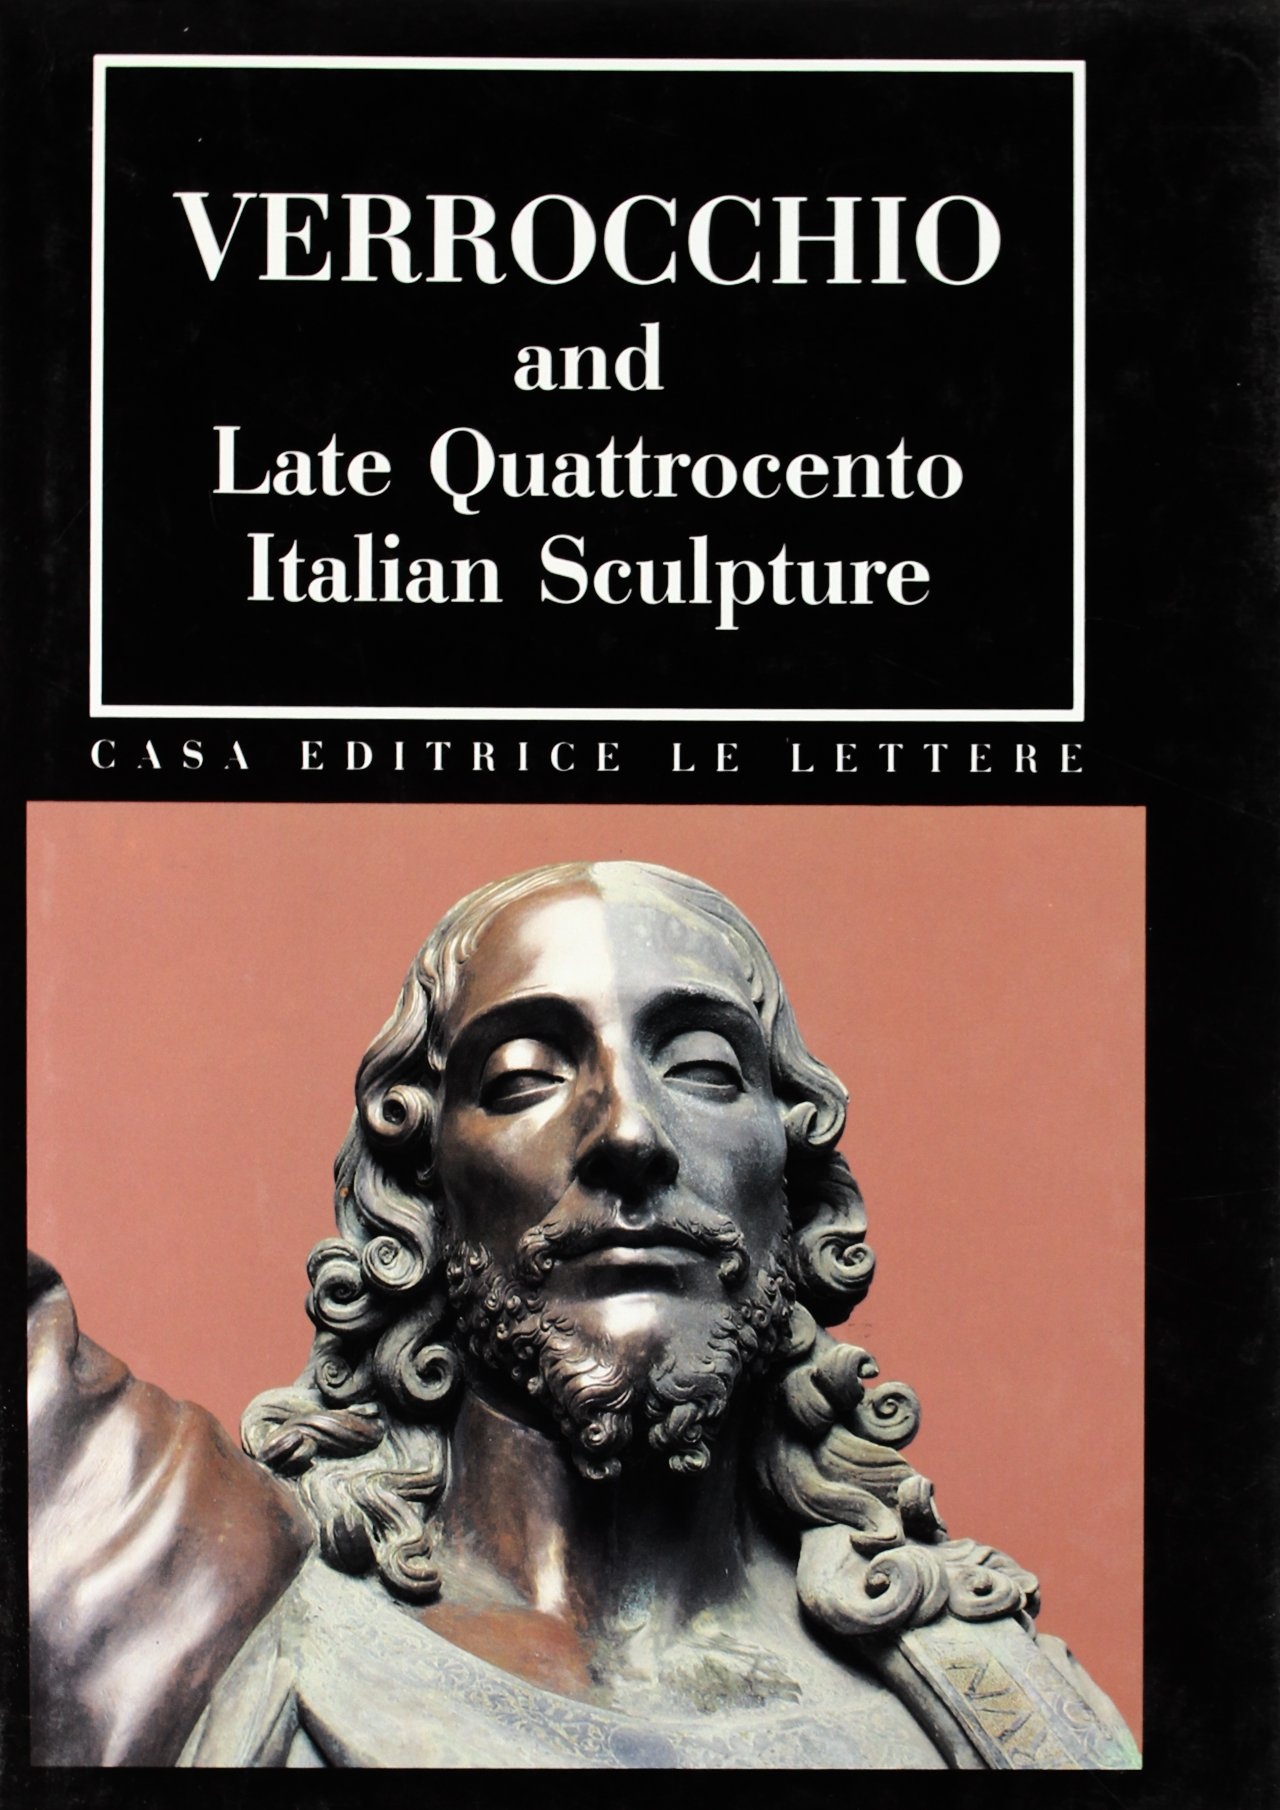 Verrocchio and Late Quattrocento Italian Sculpture